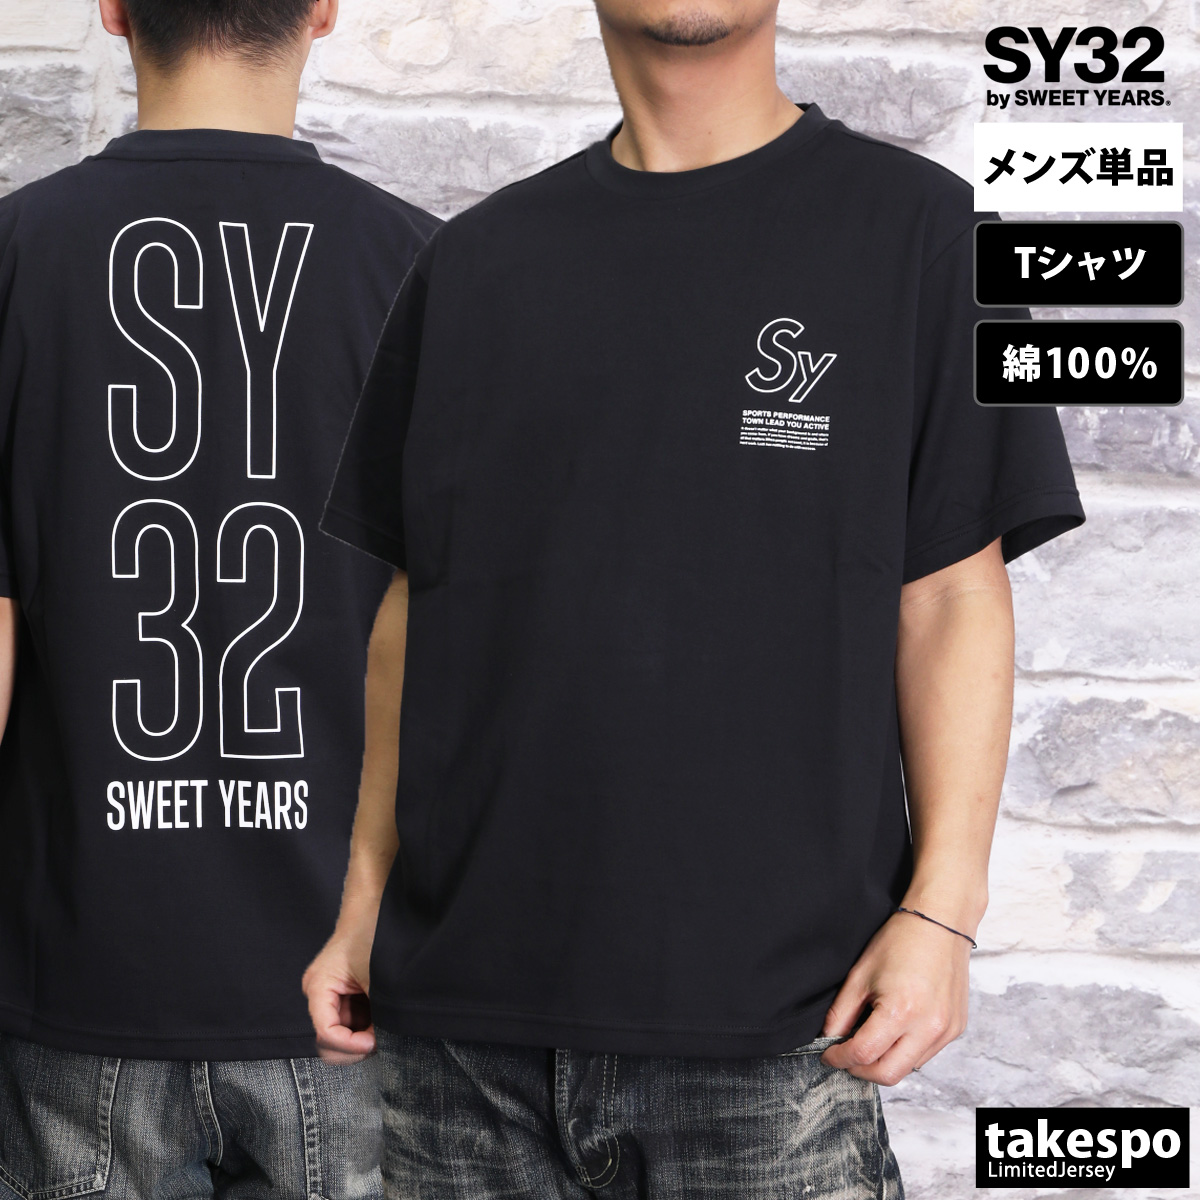 スウィートイヤーズ Tシャツ メンズ 上 SY32 by SWEET YEARS 半袖 コットン バ...